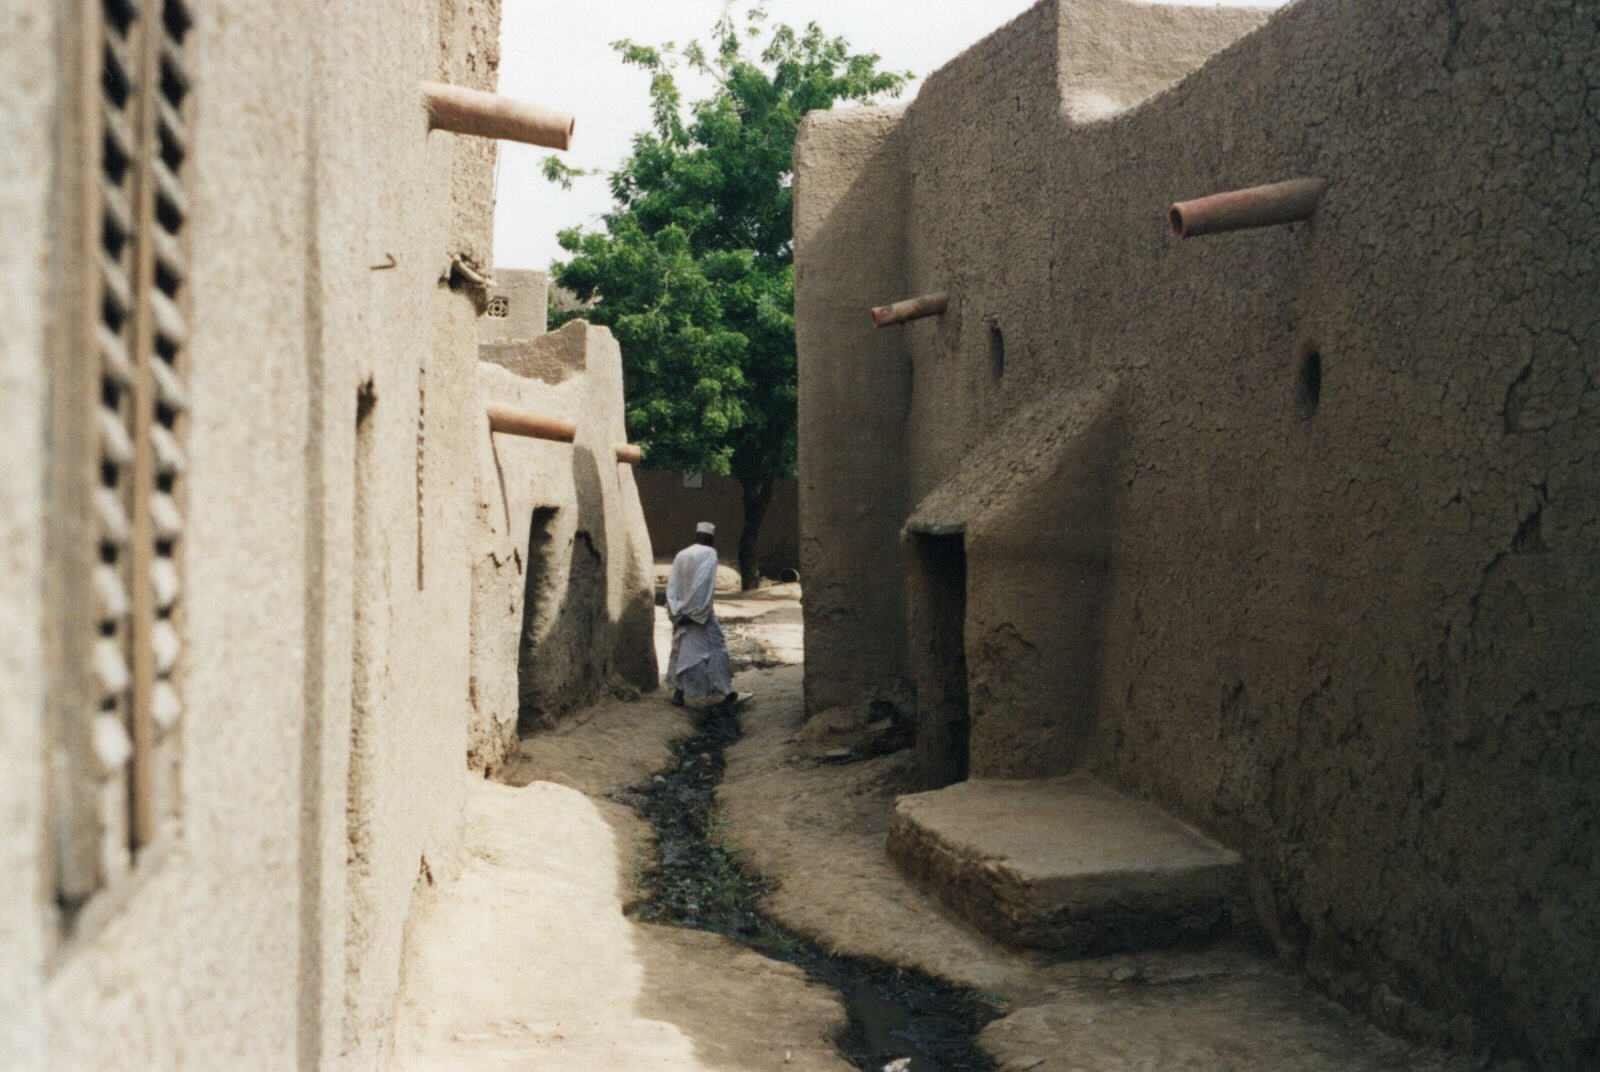 A street in Djenne old town, Mali